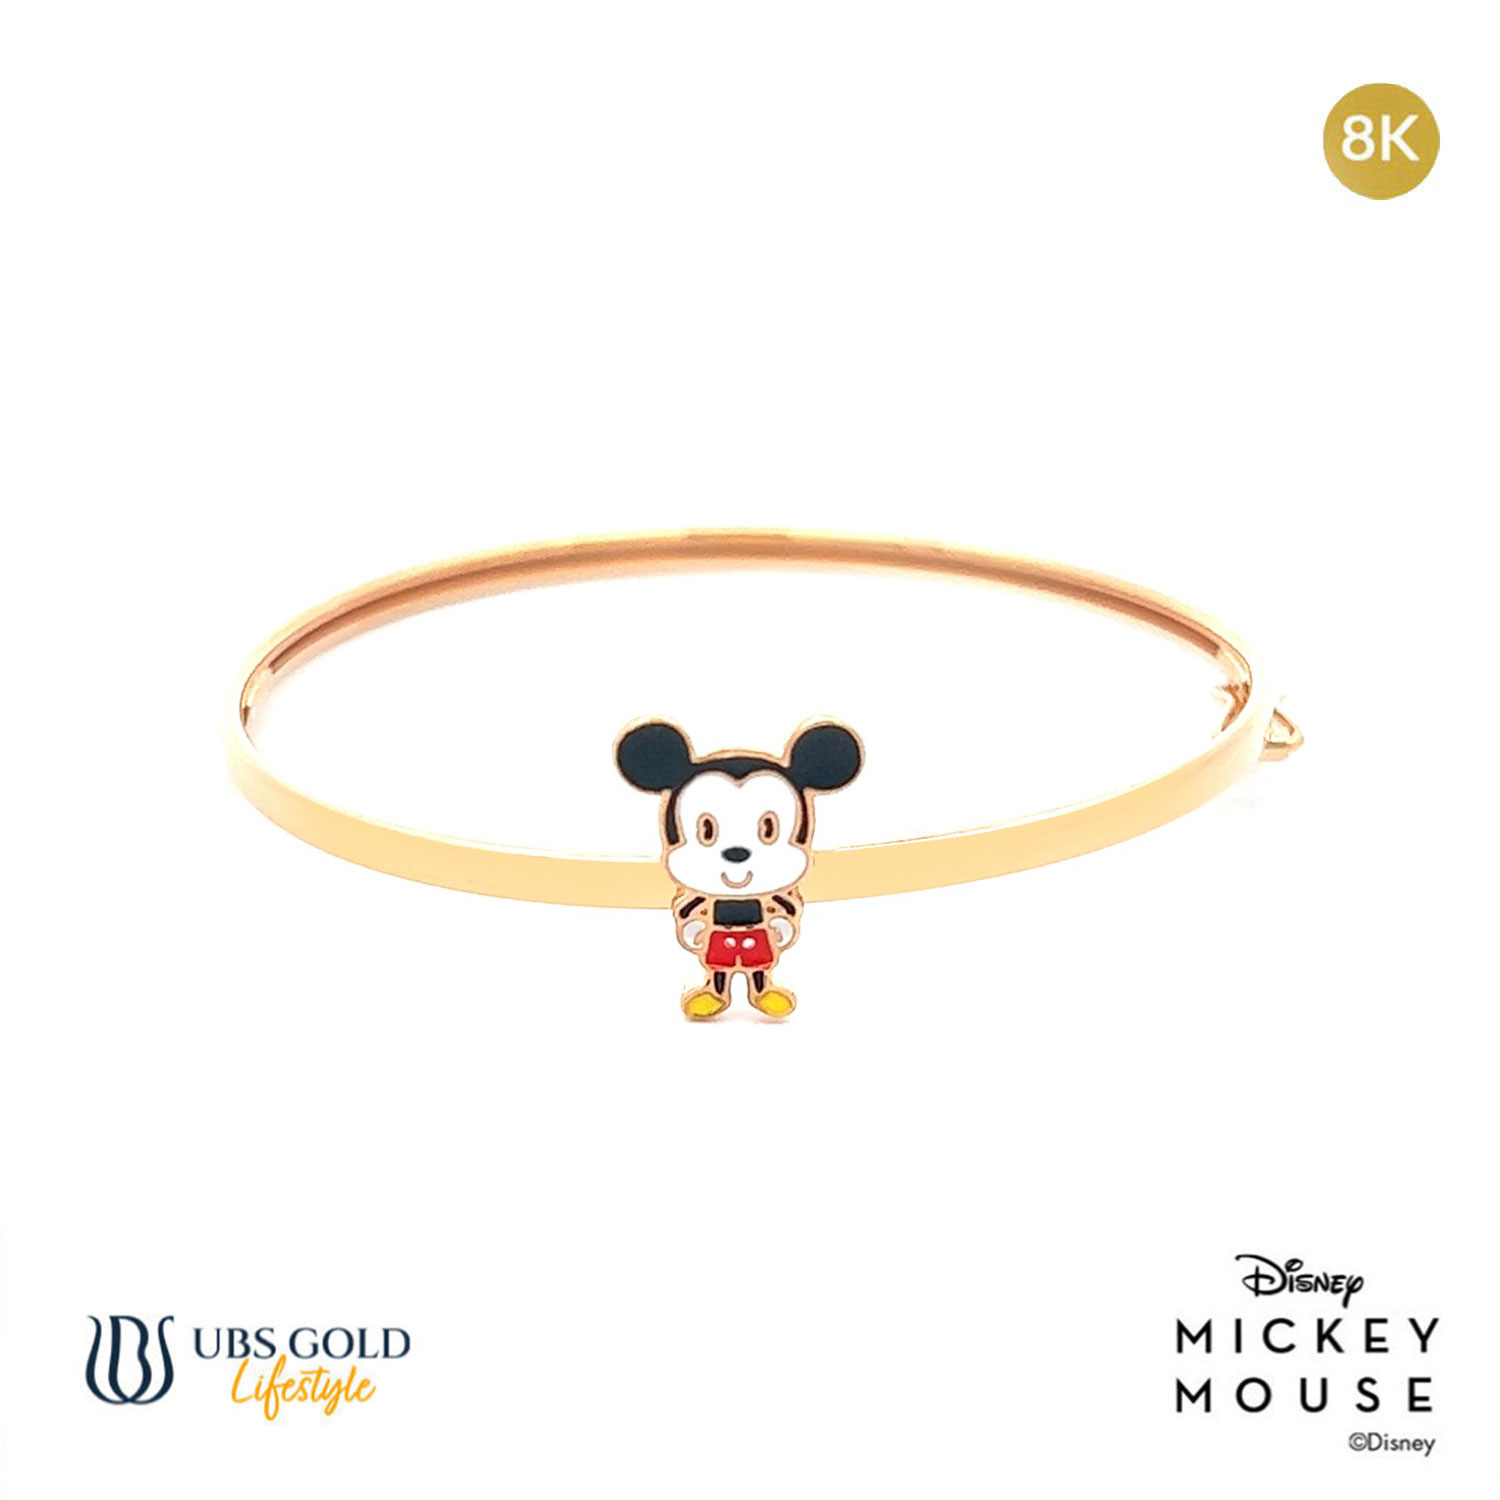 UBS Gelang Emas Bayi Disney Mickey Mouse - Vgy0011 - 8K